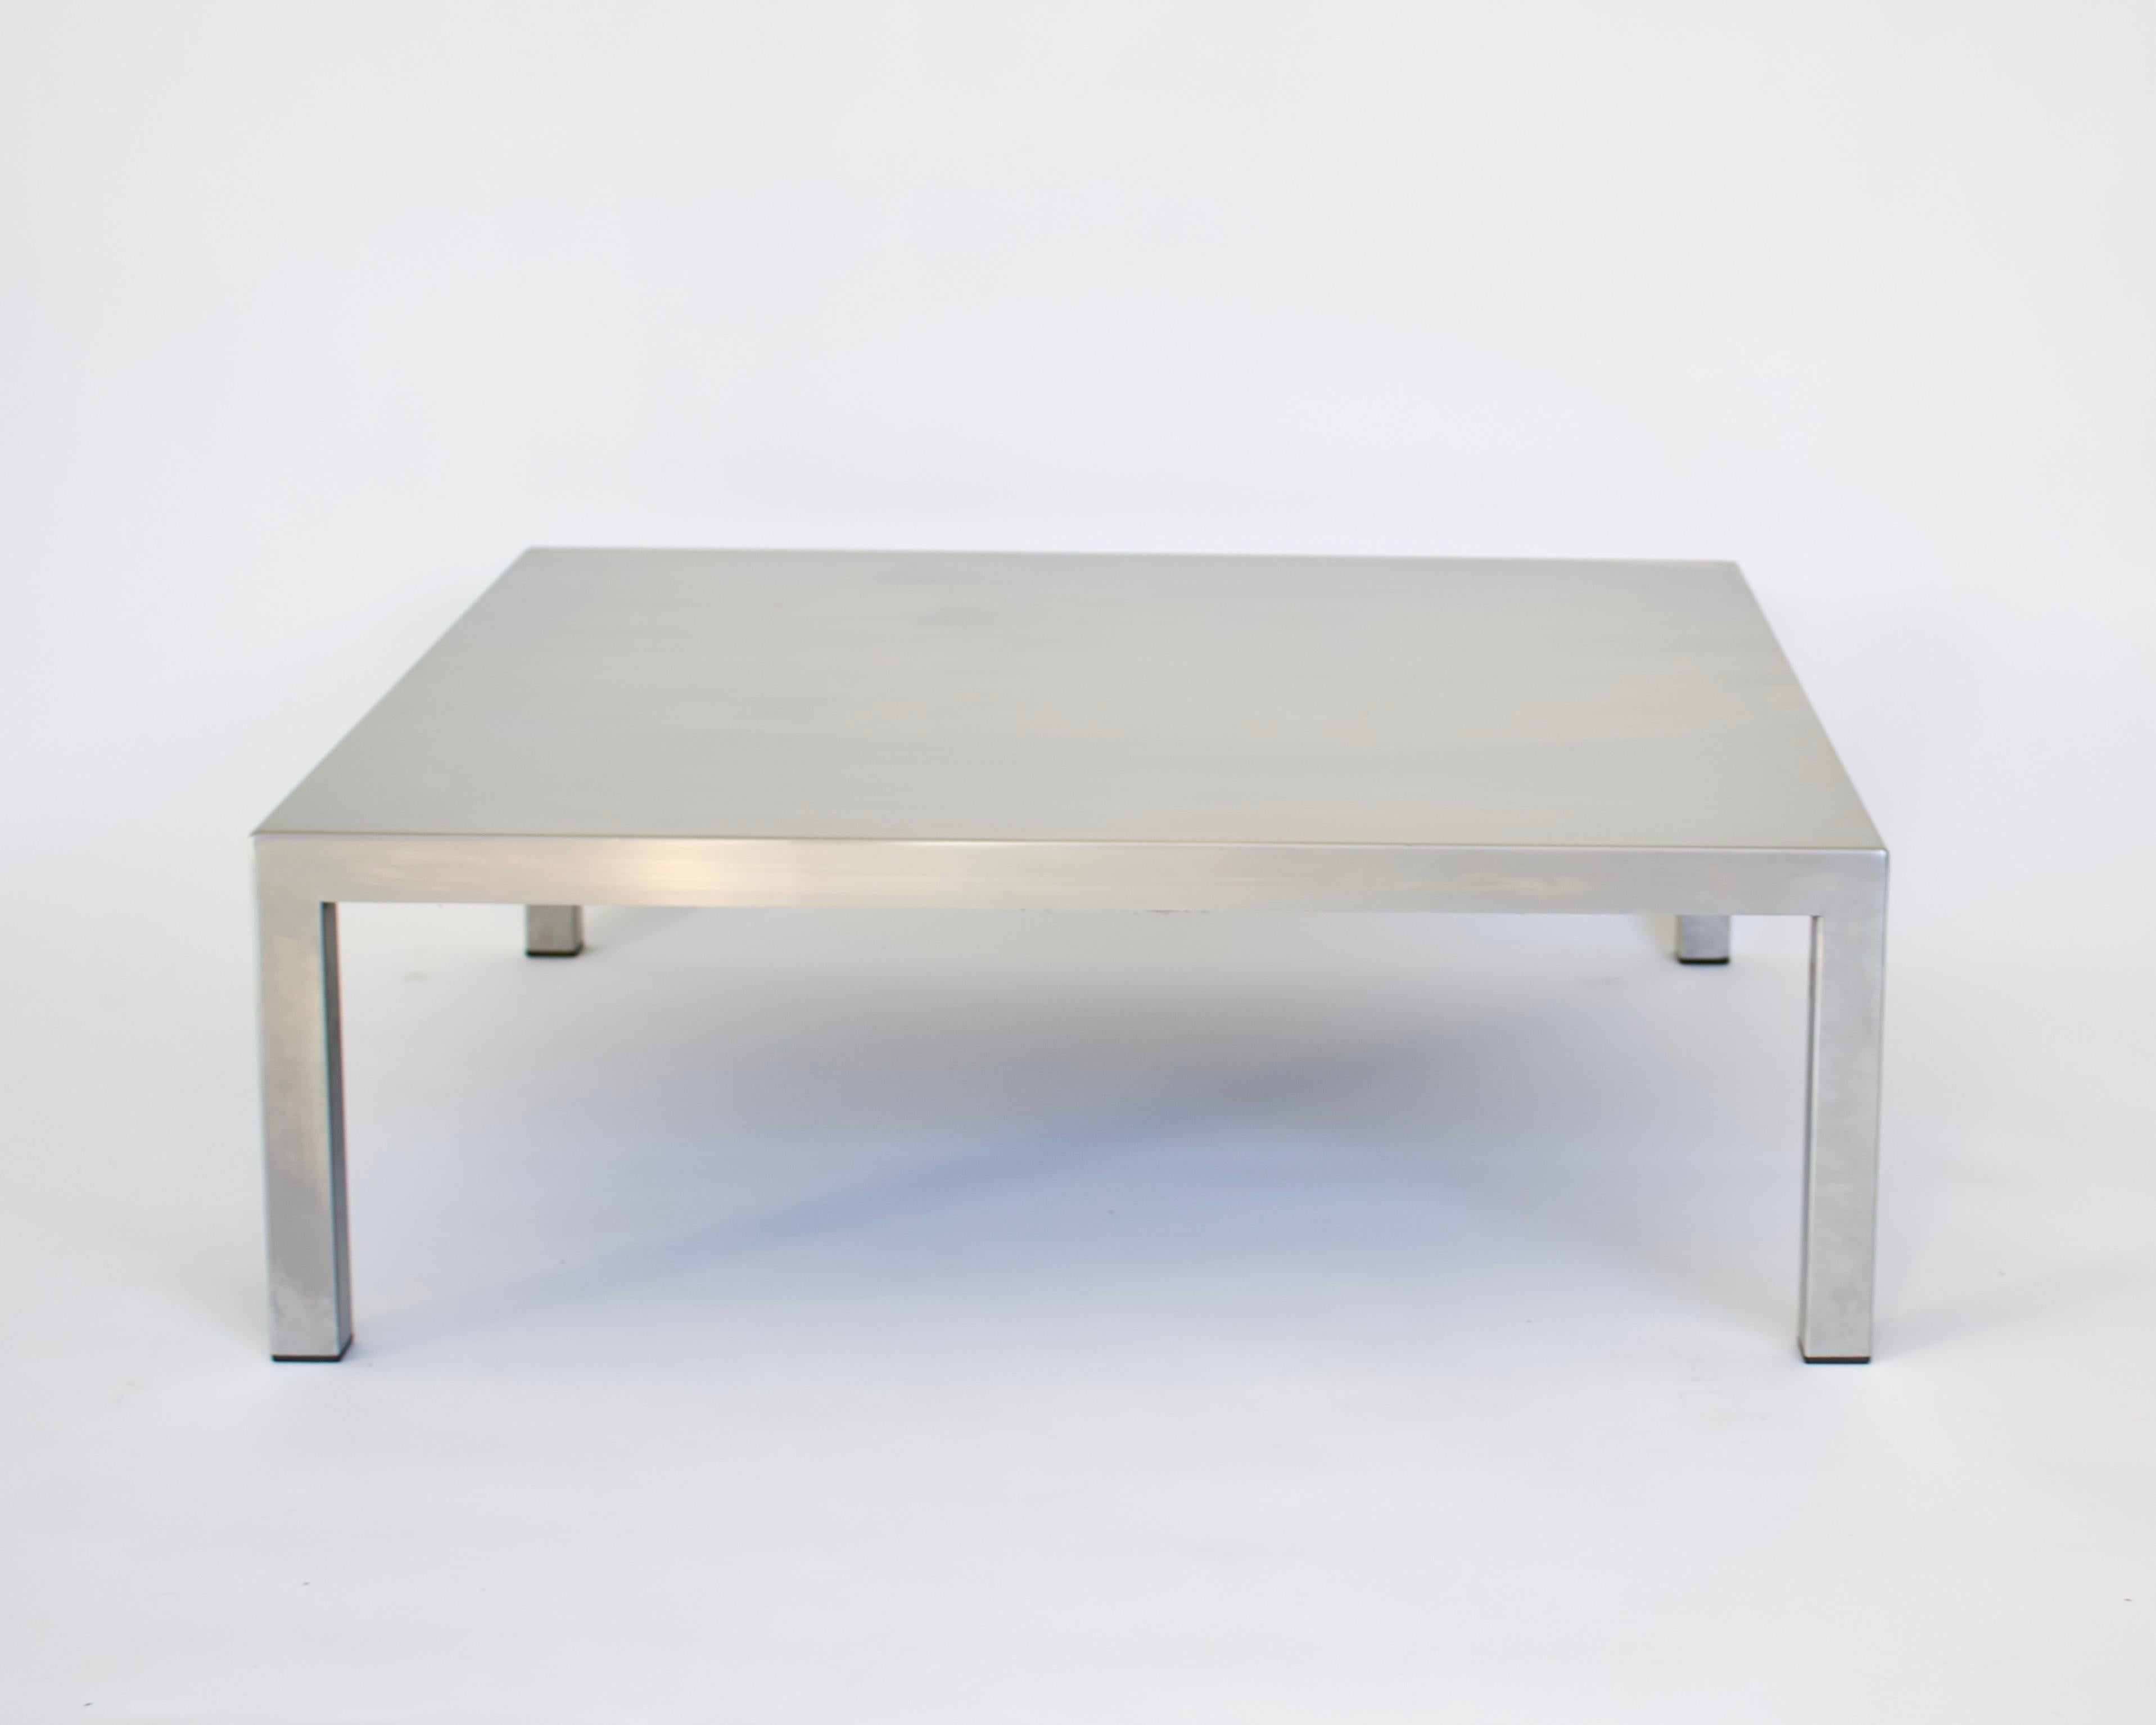 Table basse carrée en acier inoxydable mat de Maria Pergay pour Creative Design Steel avec Marina Varenne, 1970, Paris. L'utilisation iconique de ce MATERIAL par les designers se retrouve dans l'un de ses designs minimalistes les plus simples.
Un